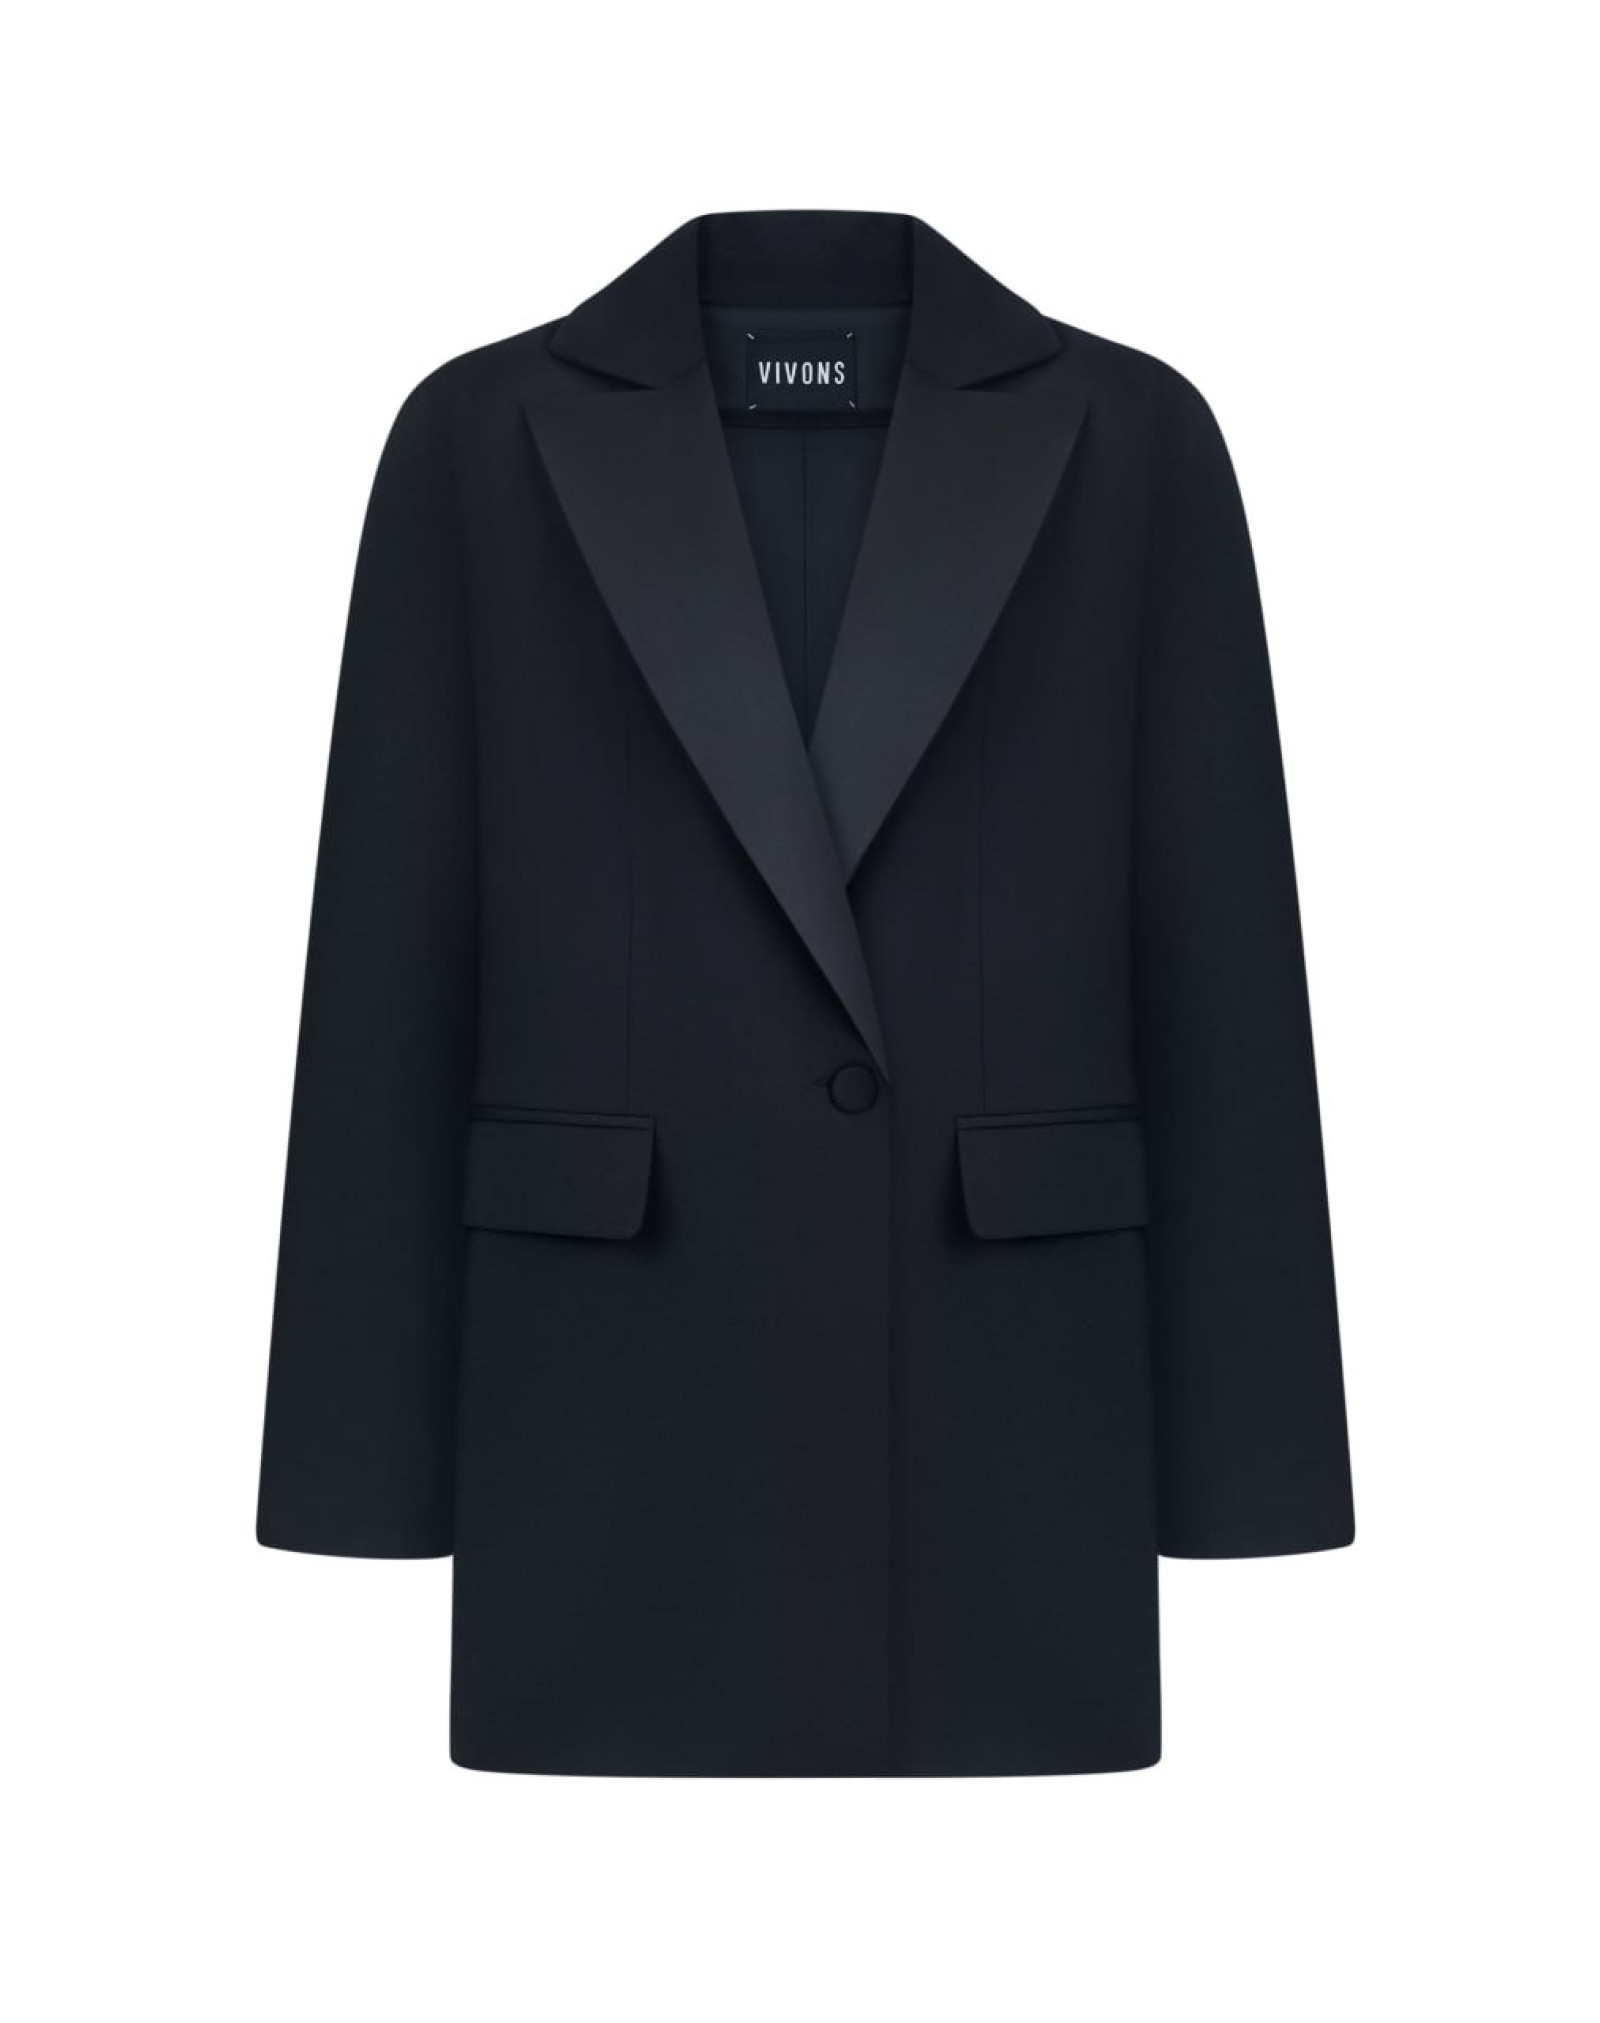 Women’s jacket with black satin trim